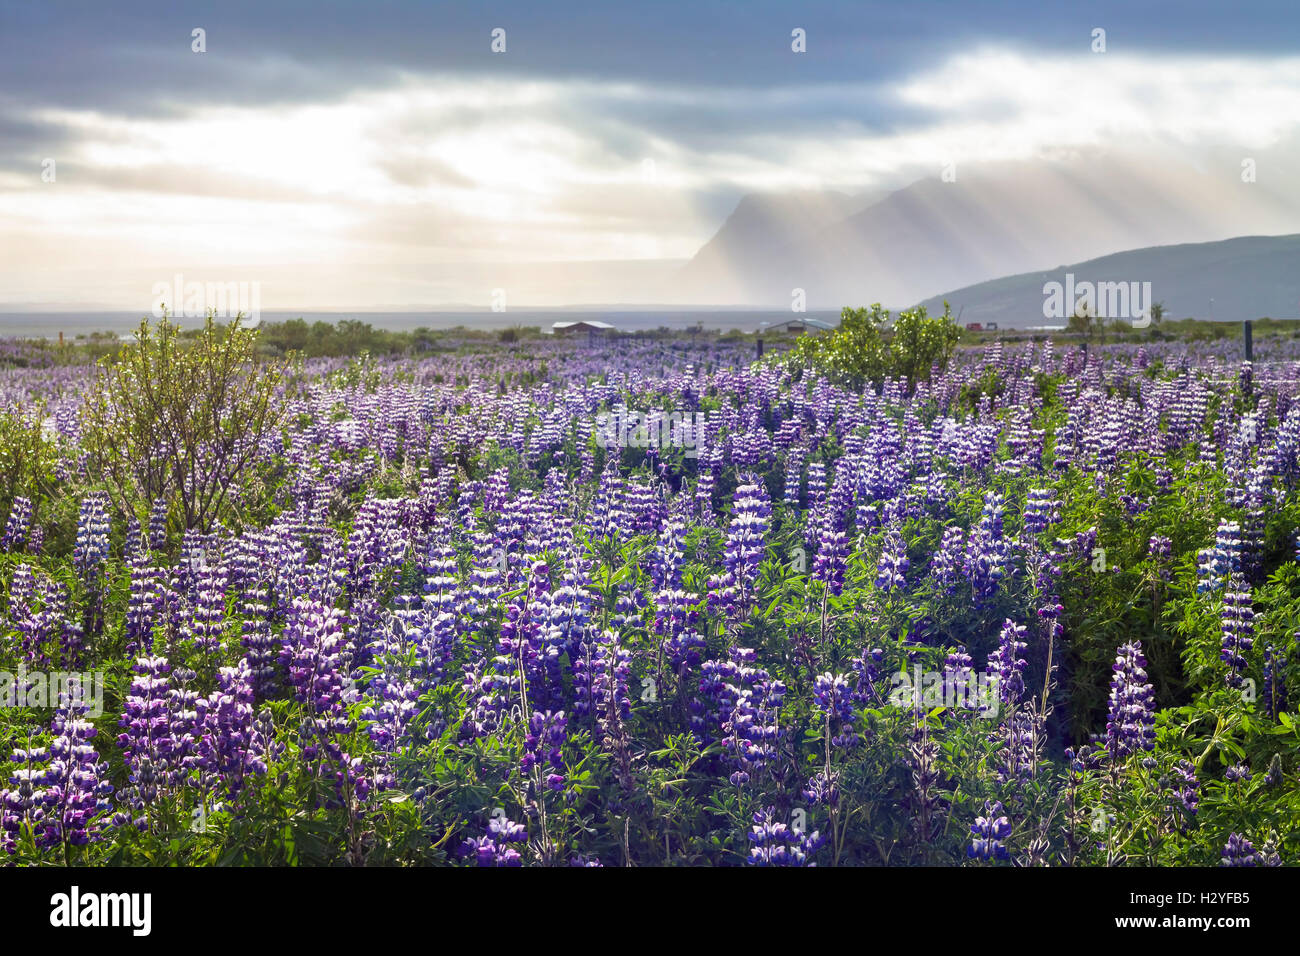 Naturaleza agreste paisaje del sur de Islandia con el lupino púrpura flores y vista espectacular de las montañas Foto de stock